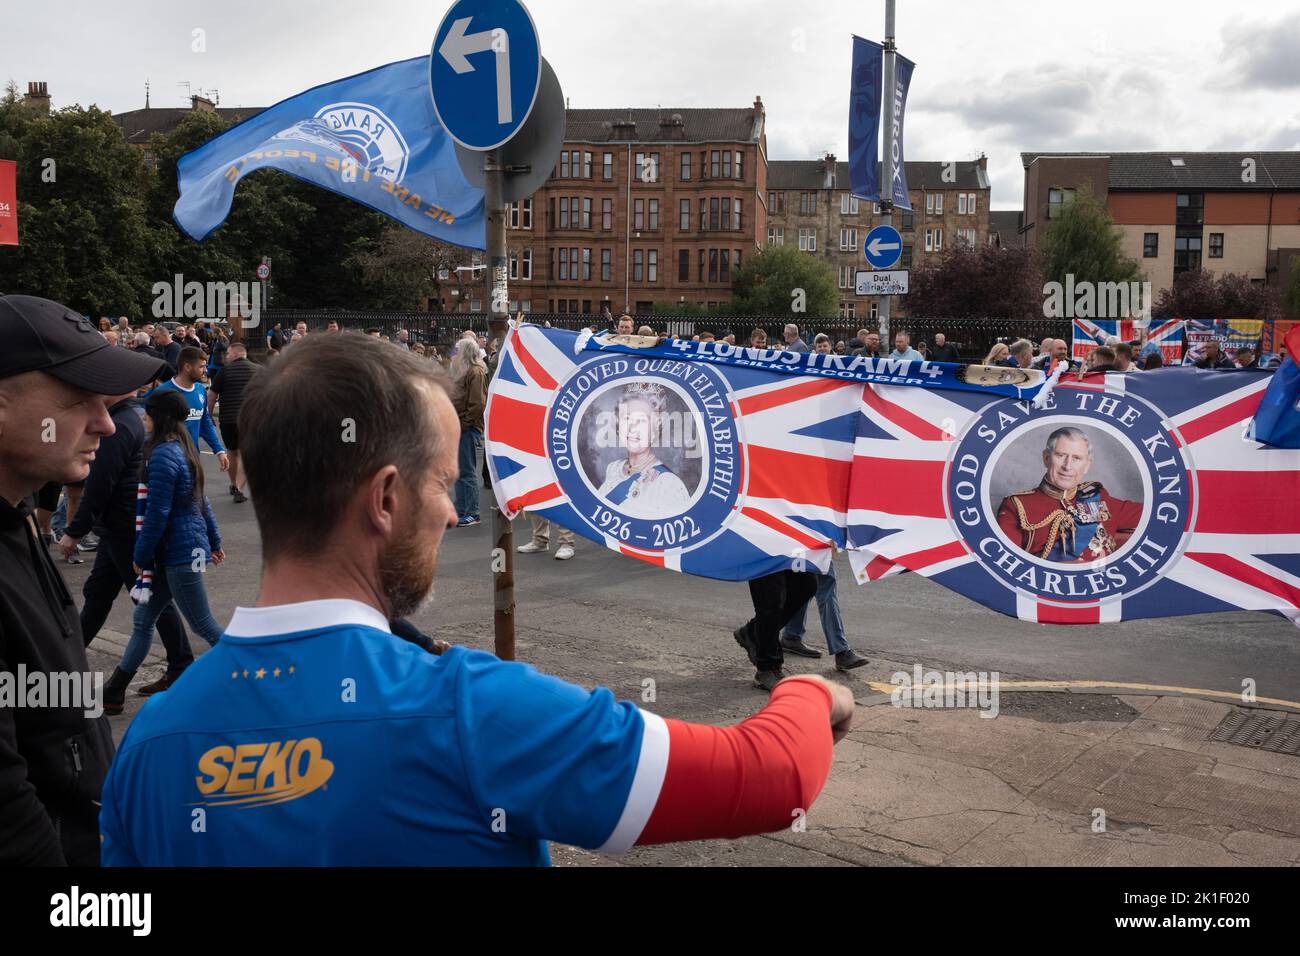 Bandiere raffiguranti la Regina Elisabetta II, recentemente deceduta, e il nuovo monarca Re Carlo III, in vendita al di fuori dello stadio Ibrox del Rangers FC, a Glasgow, Scozia, 17 settembre 2022. Foto Stock